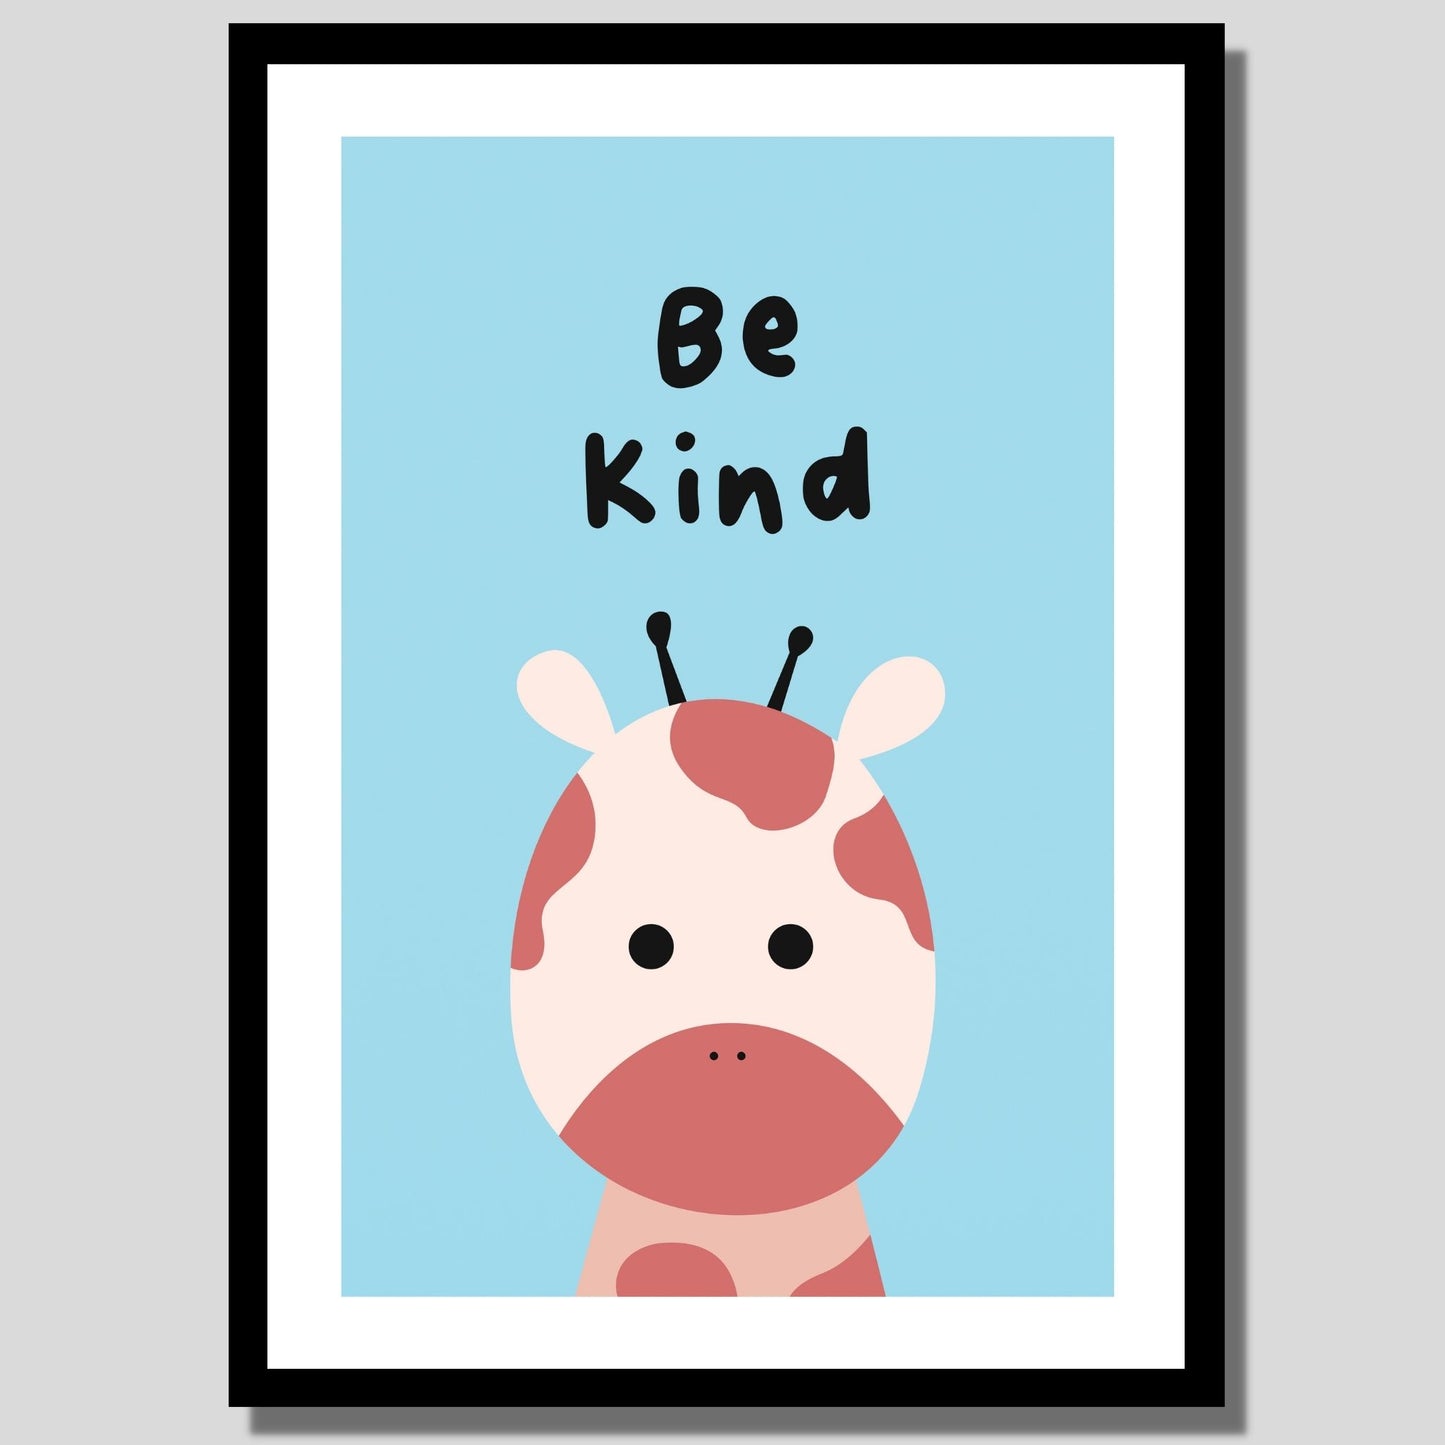 Cartoon Animal. Grafisk plakat for barnerommet. Beige sjiraff på lys blå bakgrunn. Tekst "Be kind". llustrasjon av plakat med hvit kant rundt i sort ramme.